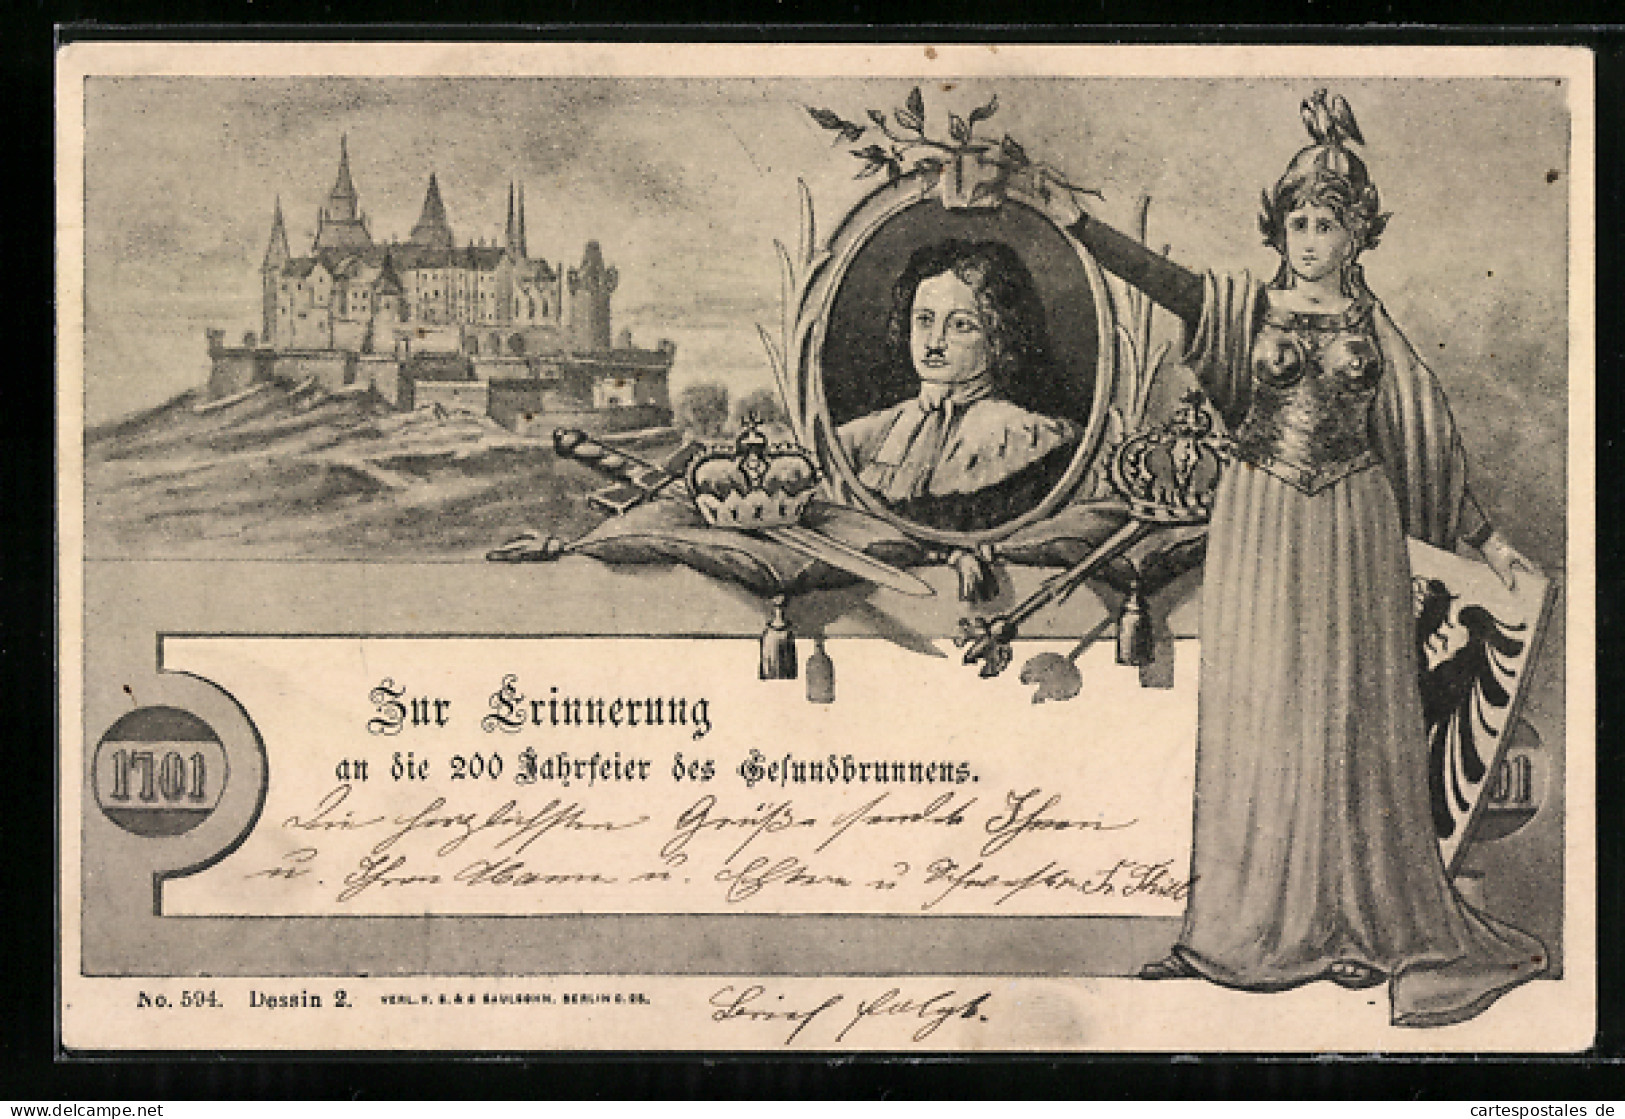 Lithographie Berlin-Wedding, Festpostkarte, 200-Jahrfeier Des Gesundbrunnens 1701  - Wedding